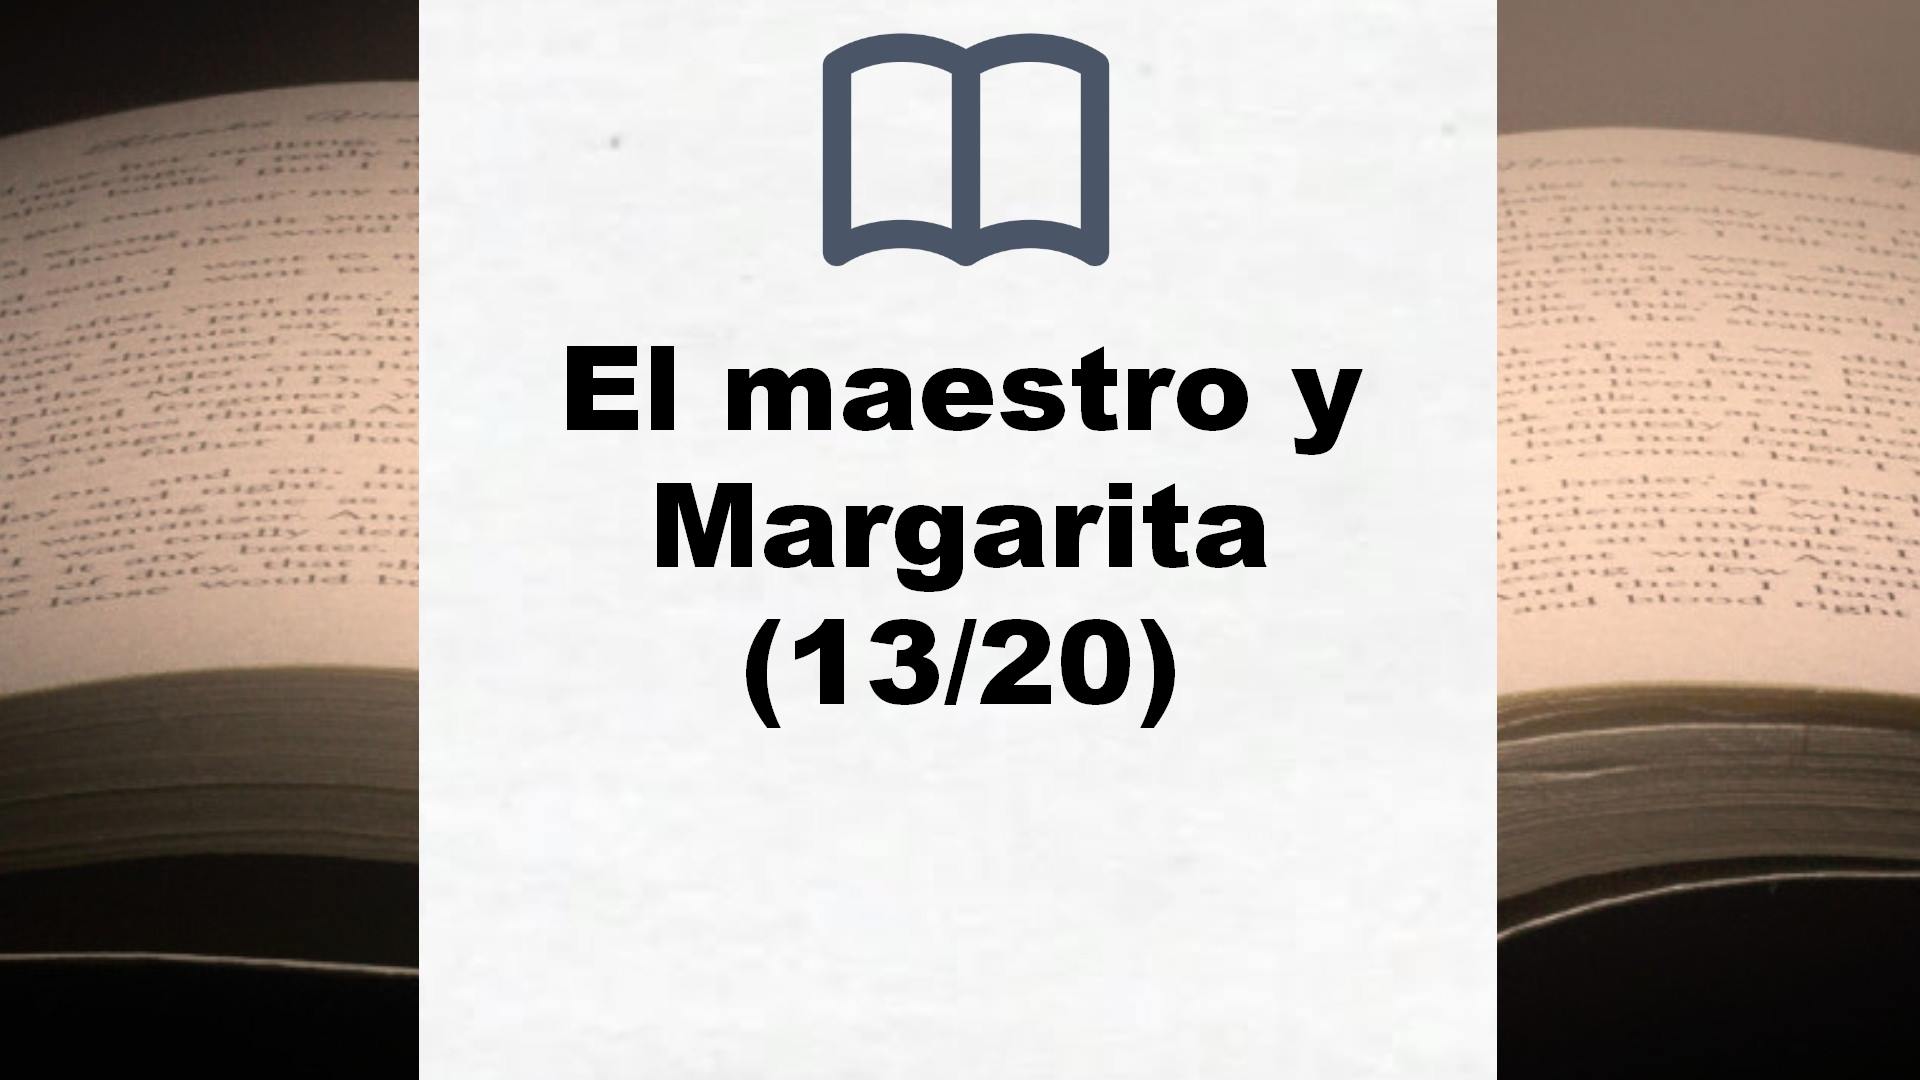 El maestro y Margarita (13/20) – Reseña del libro